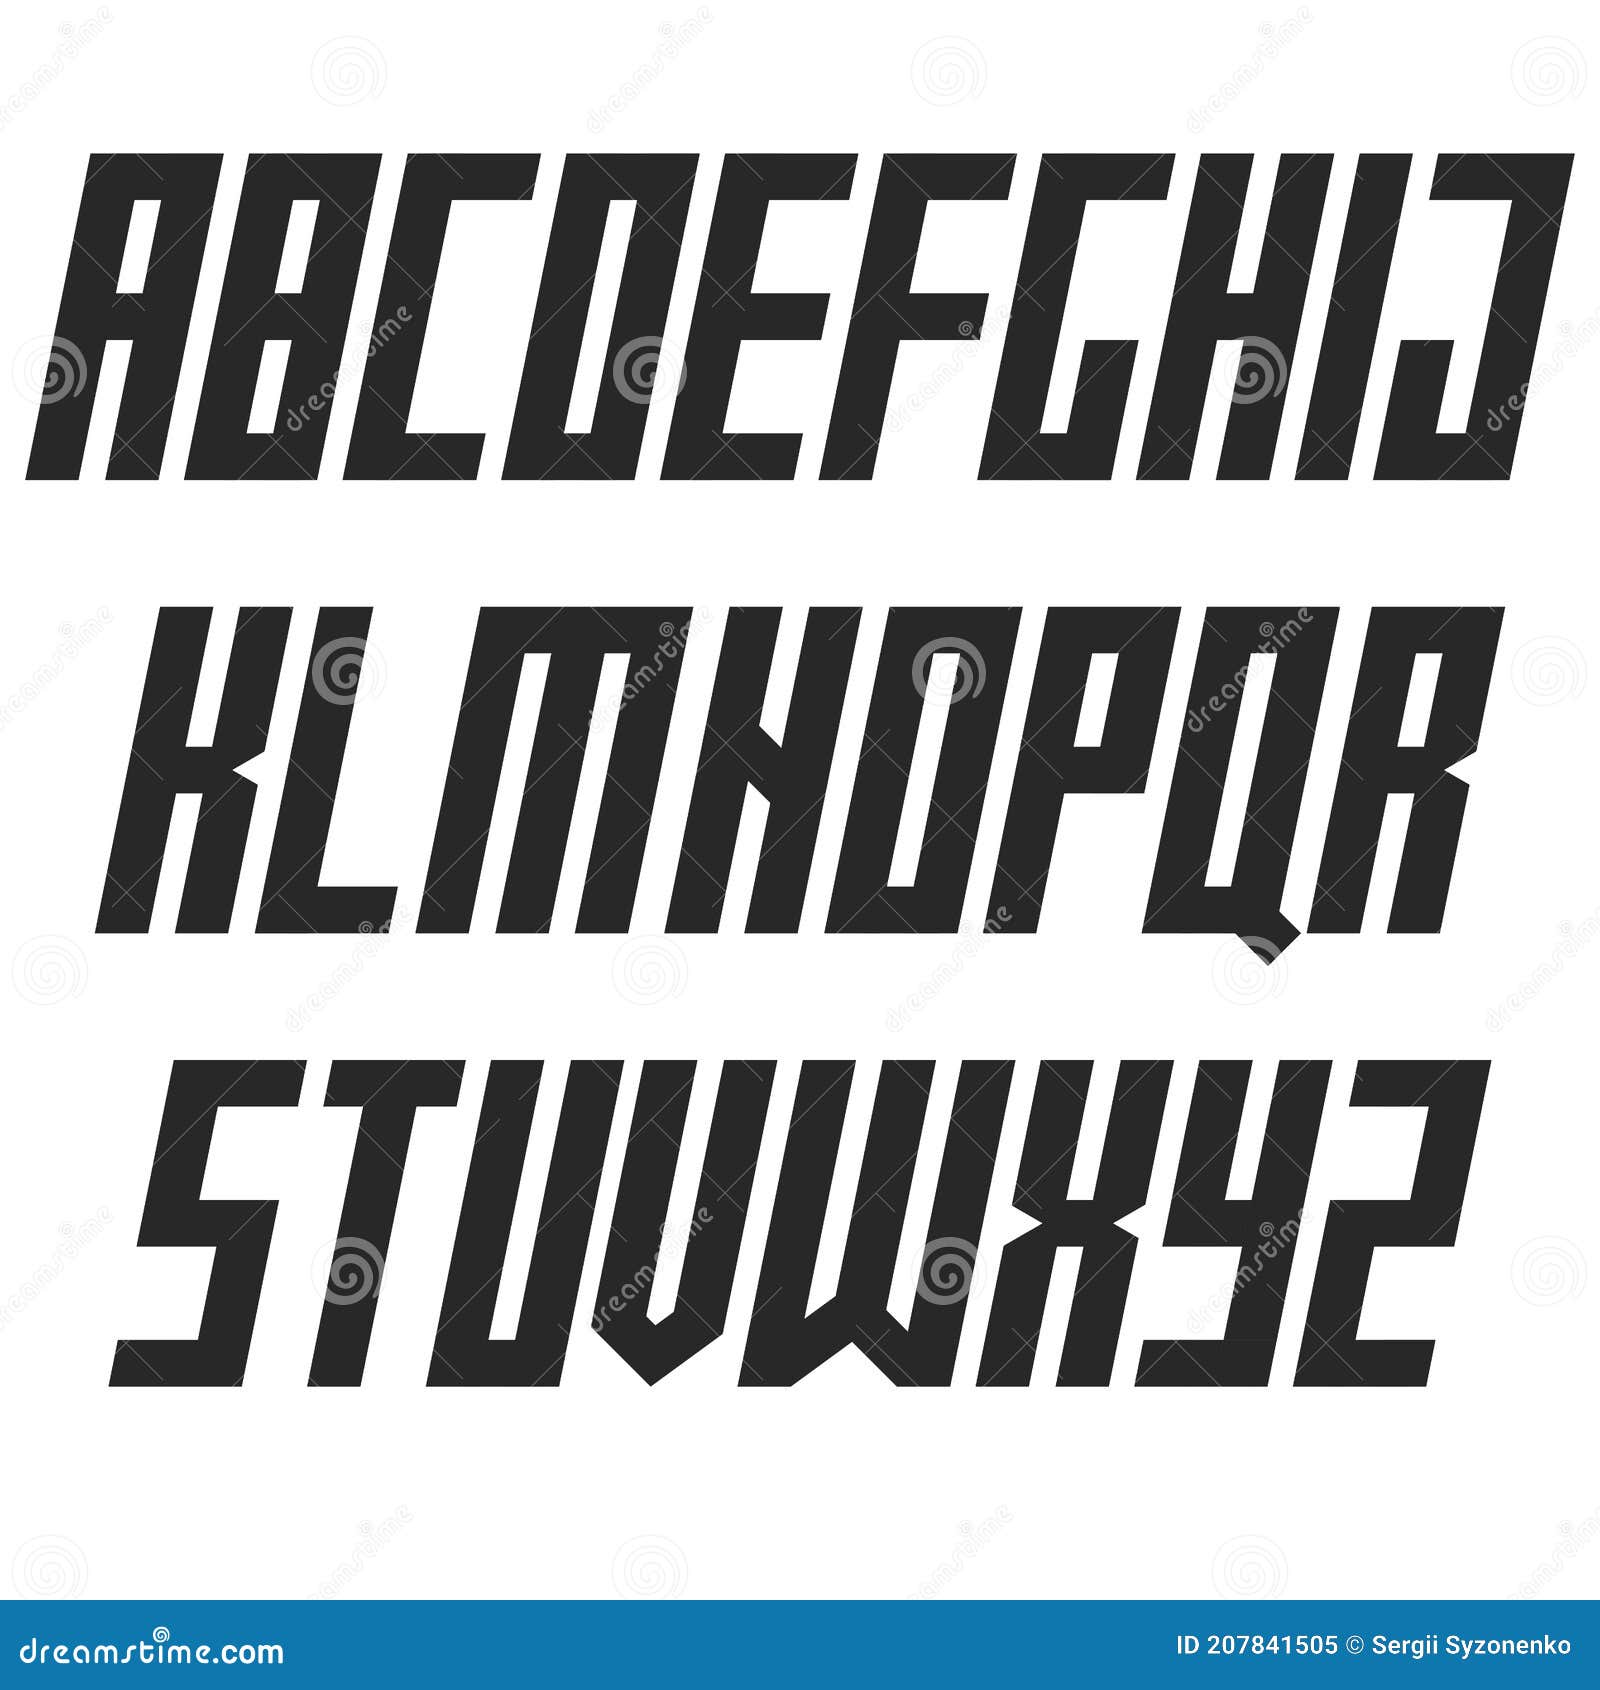 Với font Italic đậm, những thiết kế chữ của bạn sẽ trở nên ấn tượng hơn bao giờ hết. Hãy truy cập vào đường link để tìm thấy những hình ảnh thiết kế chữ độc đáo và sáng tạo nhất.